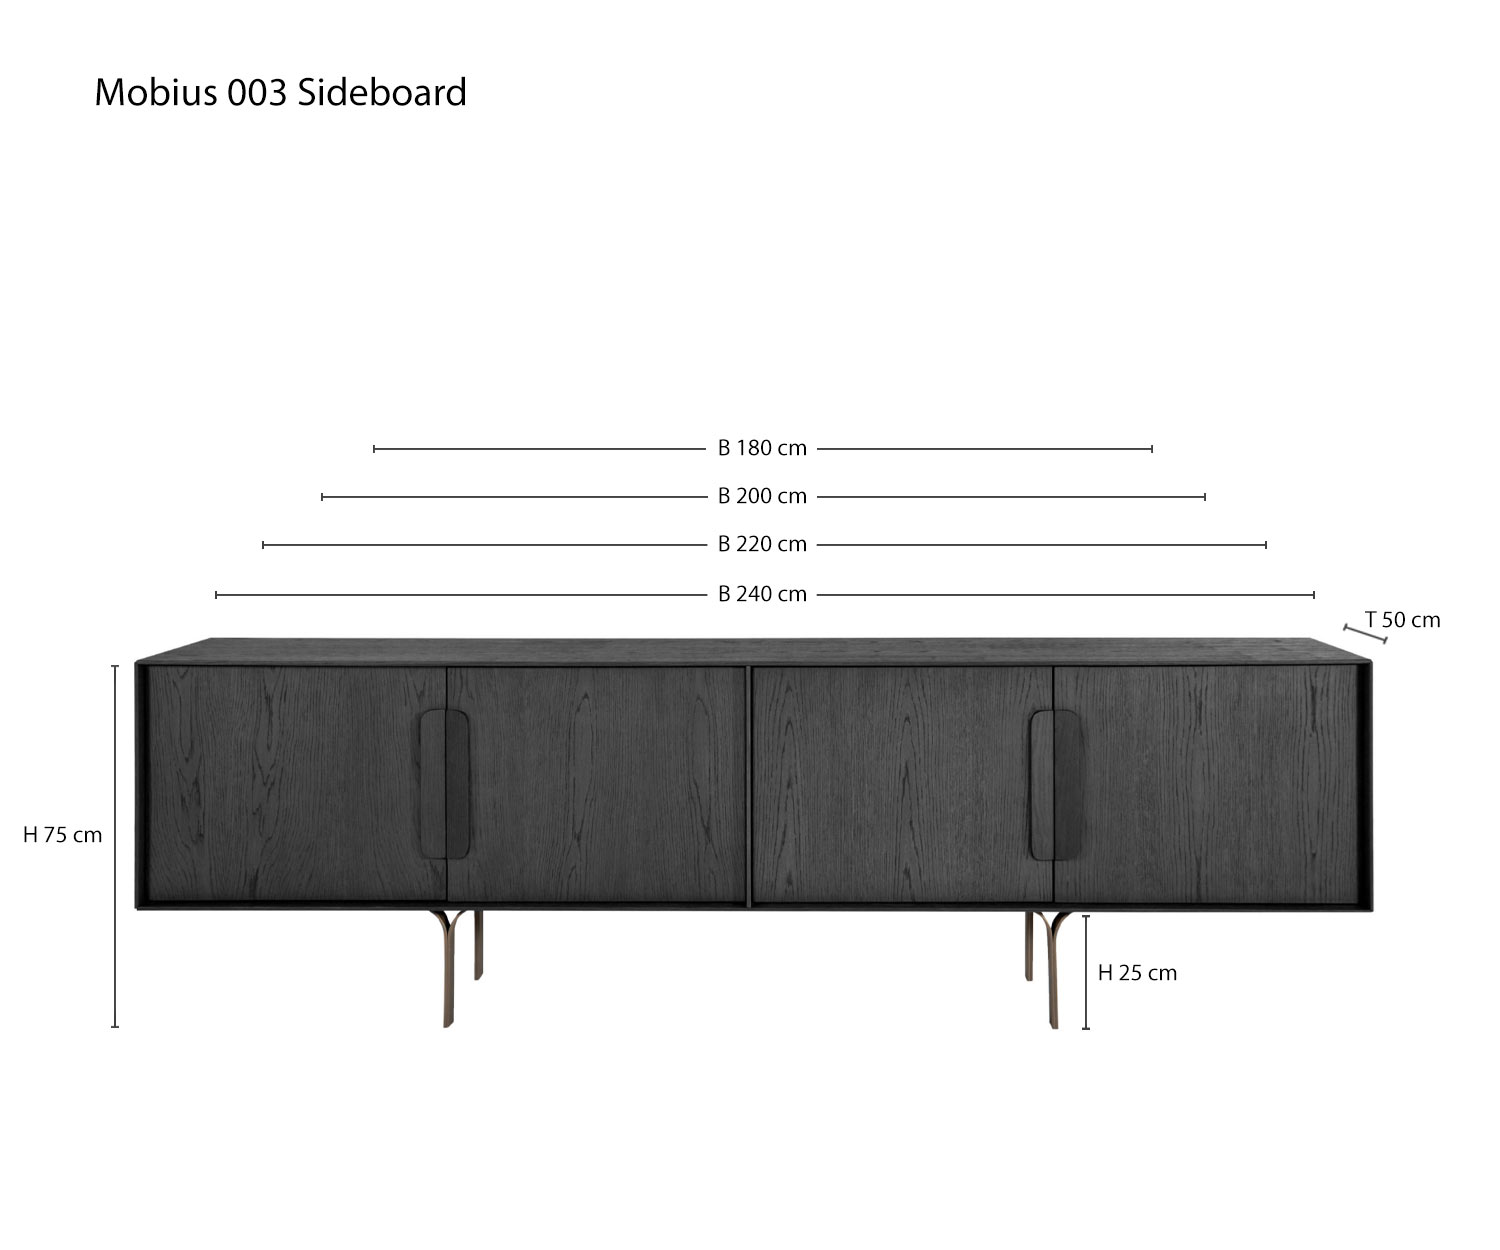 Designer Sideboard Mobius 003 von al2 Skizze Maße Größen Größenangaben